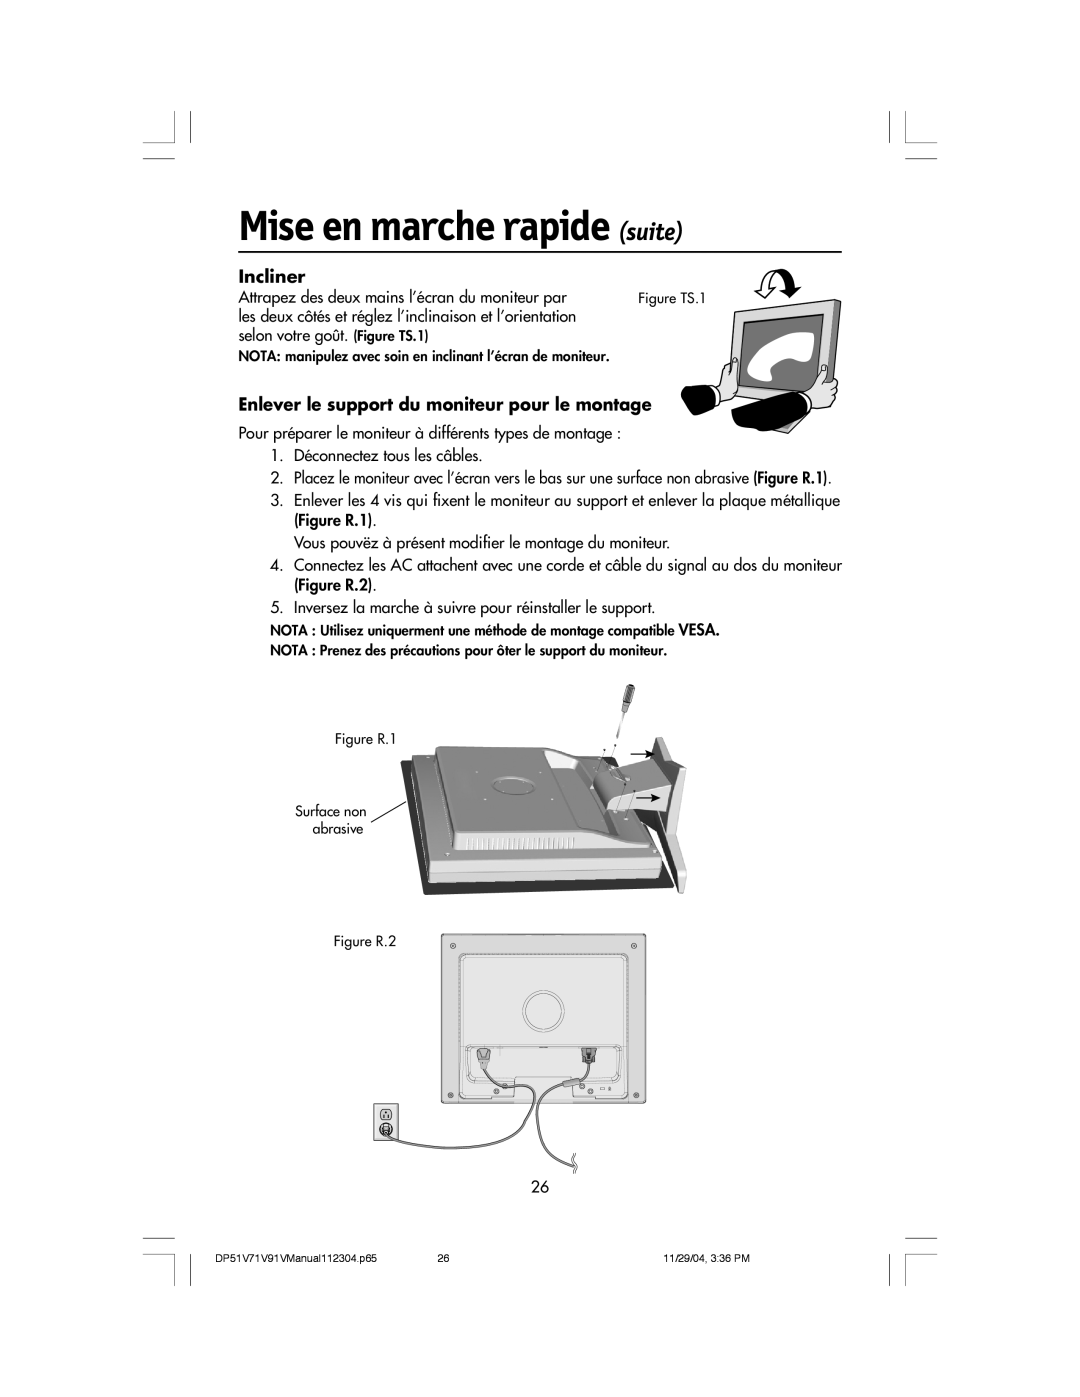 Mitsubishi Electronics V71LCD manual Incliner, Enlever le support du moniteur pour le montage, Mise en marche rapide suite 